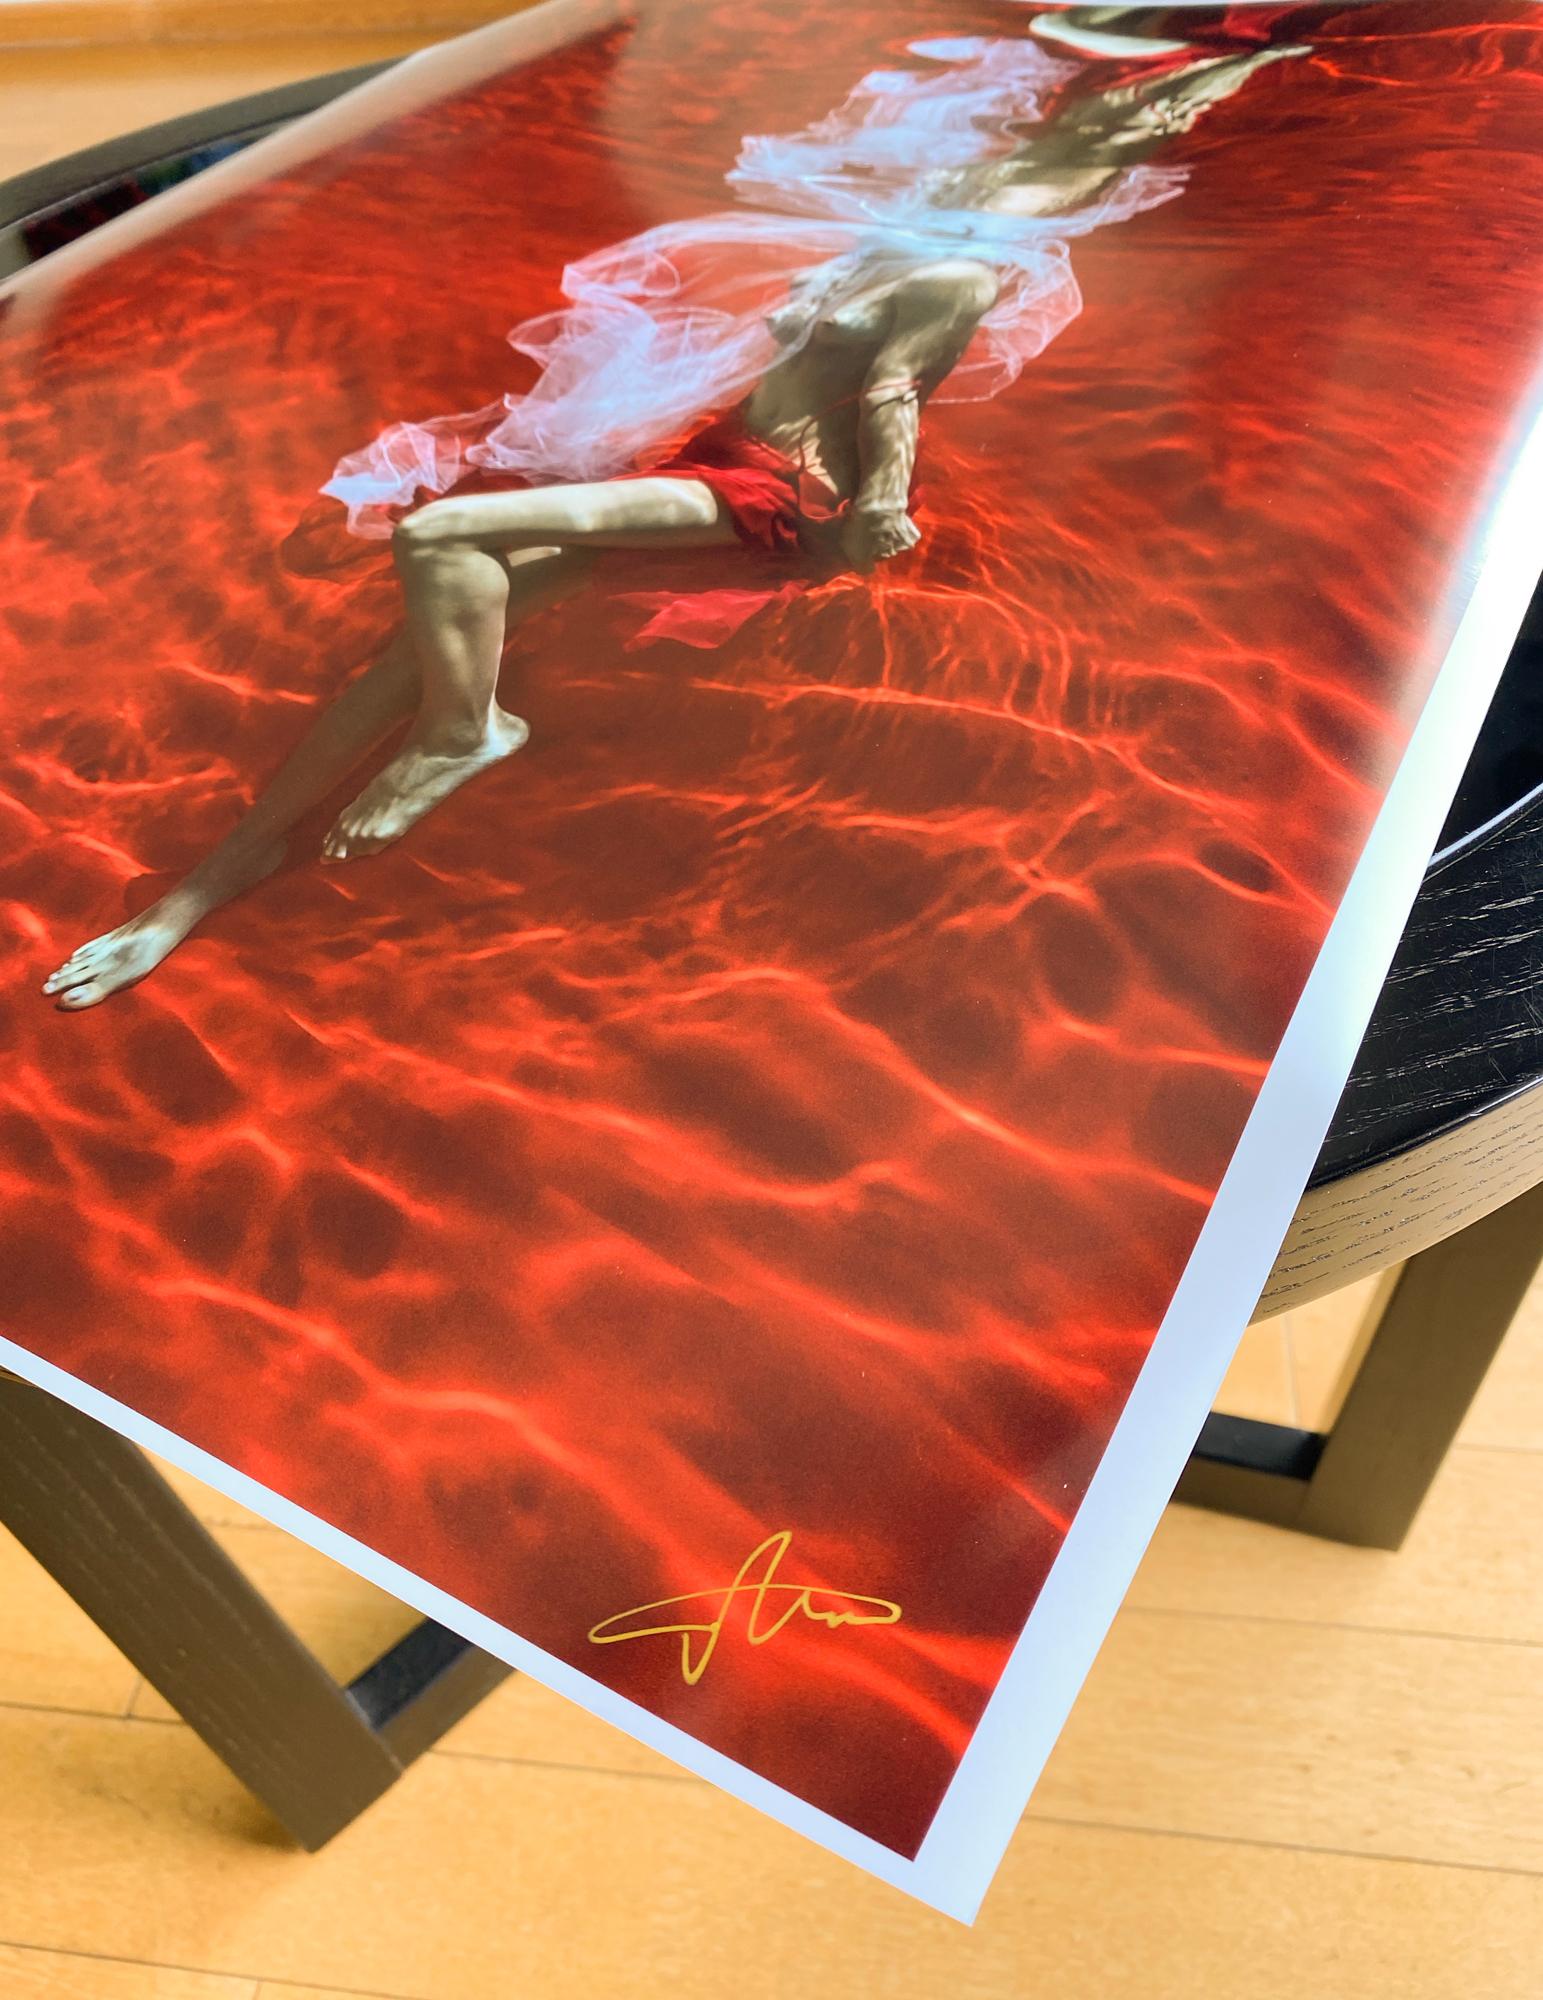 Ein Unterwasserfoto einer jungen Frau ohne Oberteil mit weißem Tüllschal, die ihren roten Rock auf leuchtend rotem Hintergrund auszieht. 

Original-Pigmentdruck in Galeriequalität auf Archivpapier, vom Künstler signiert.
Papierformat: 18